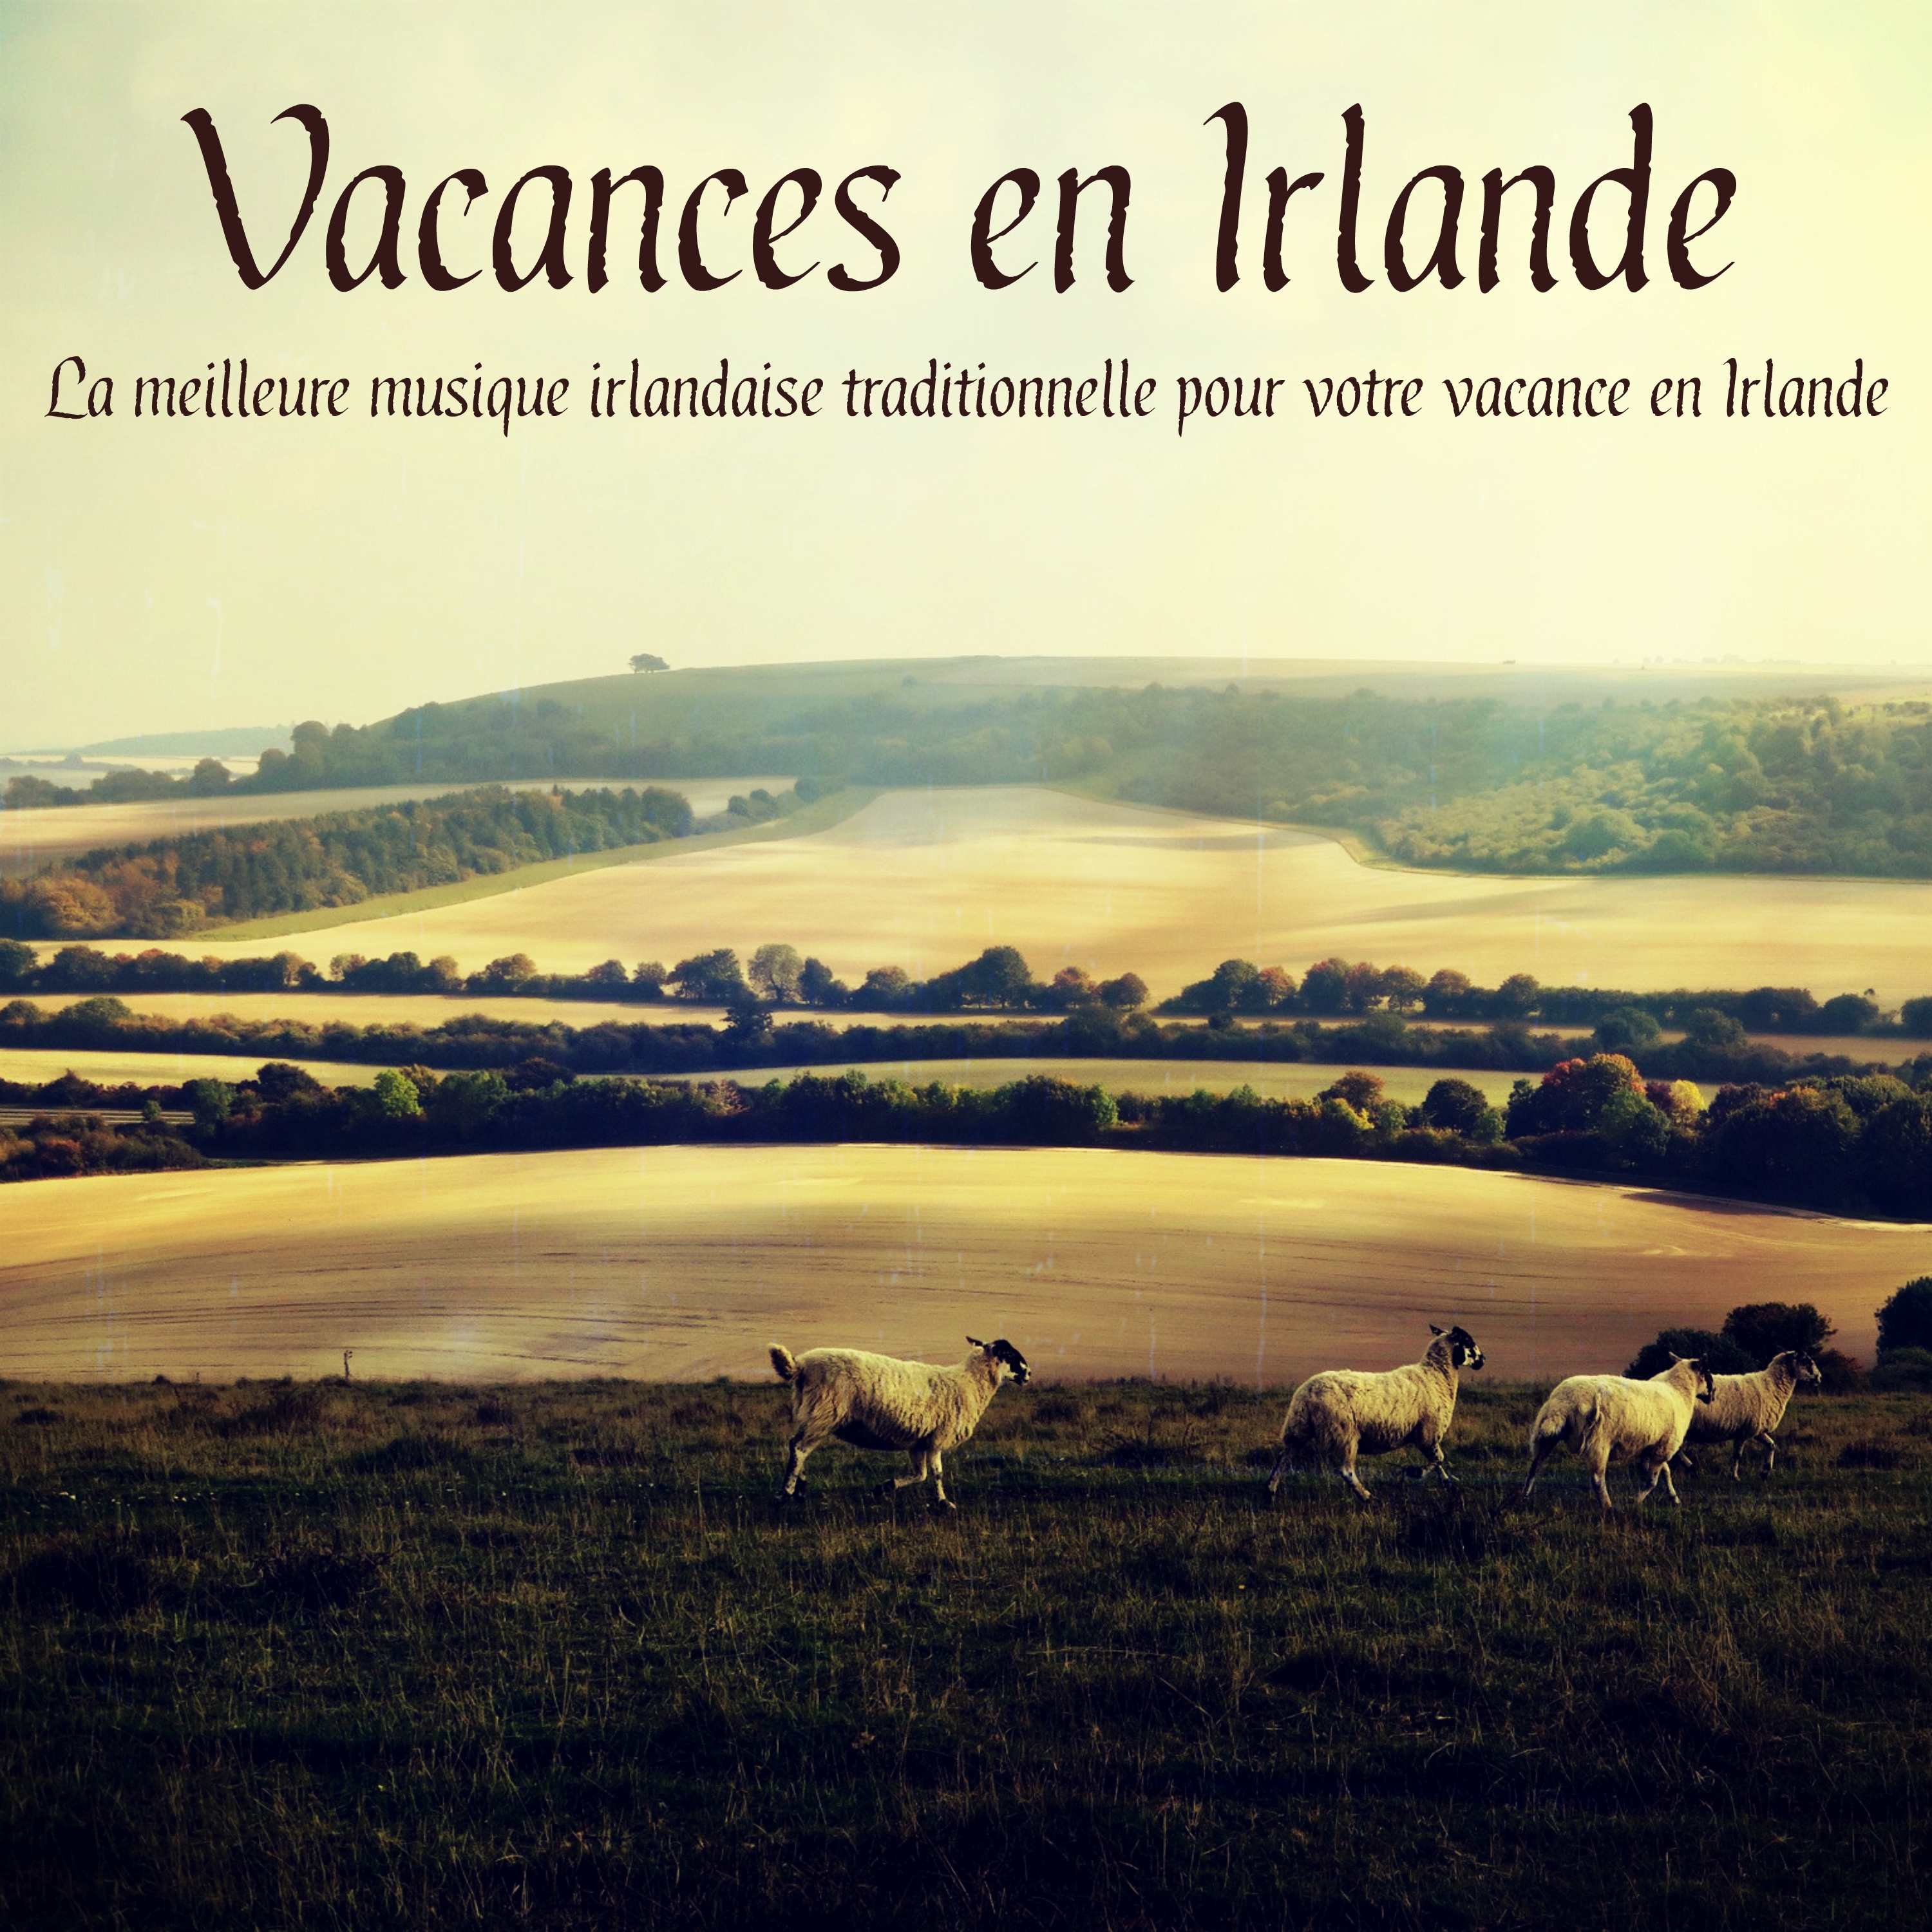 Vacances en Irlande - La meilleure musique irlandaise traditionnelle pour votre vacance en Irlande